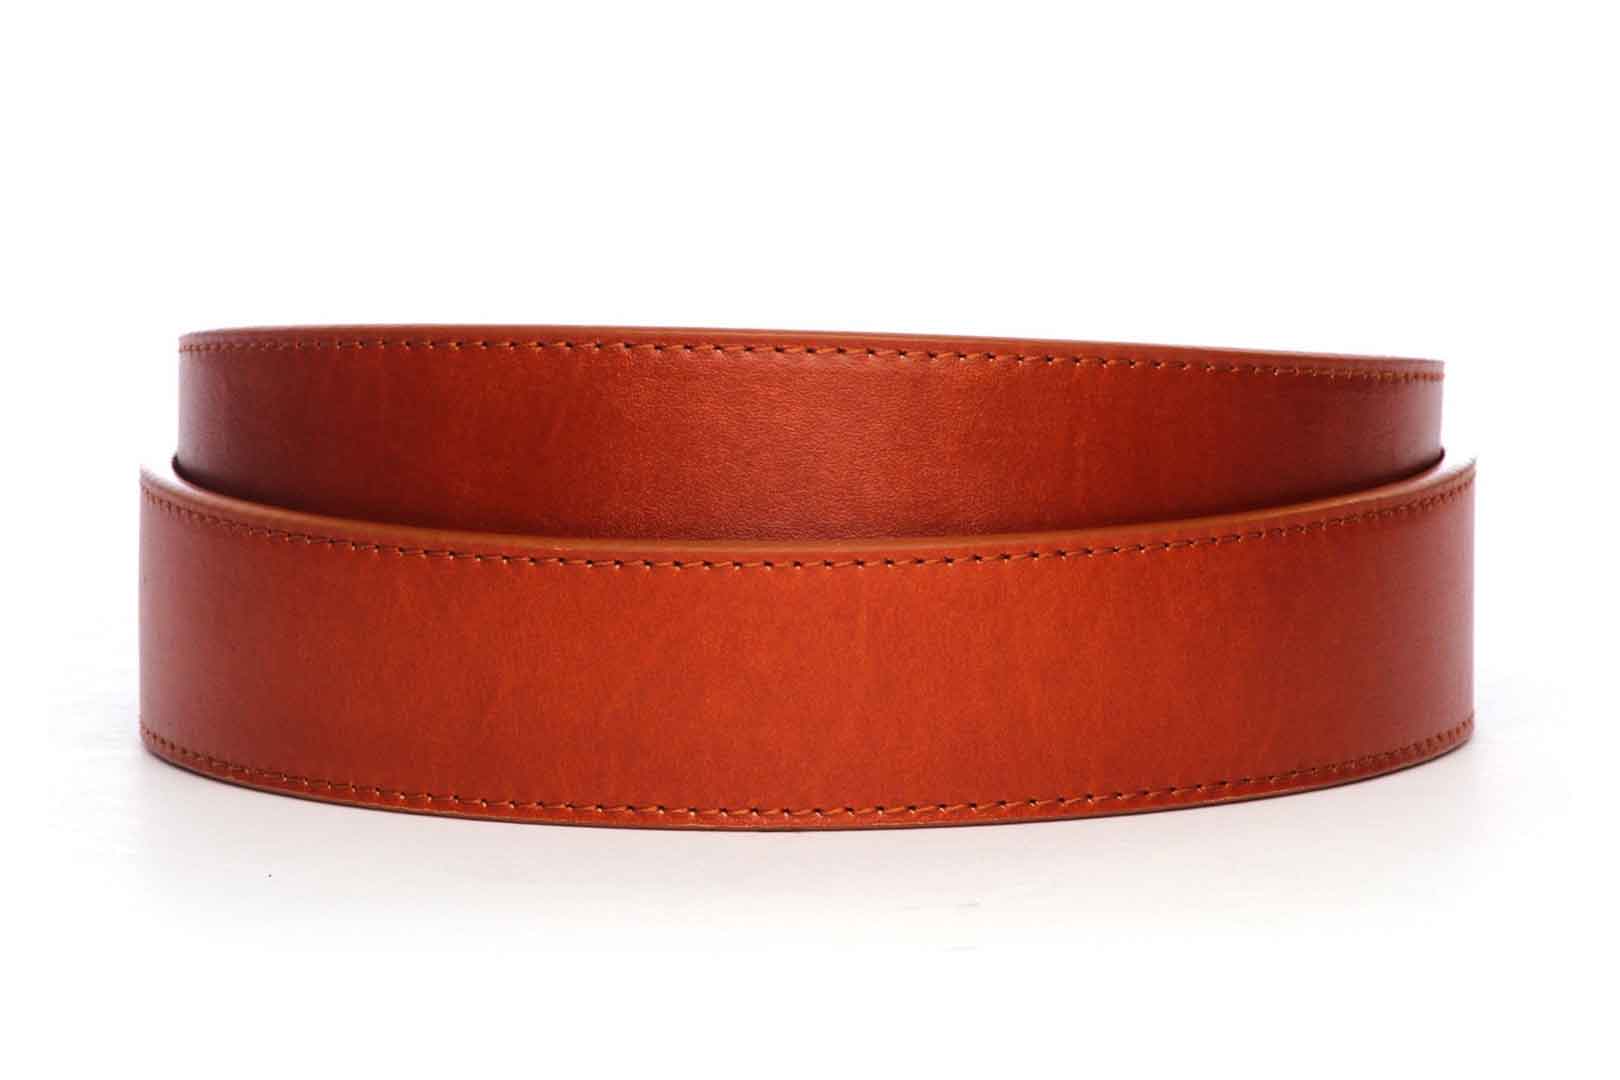 Leather Belt Strap - Men's Ratchet Belt - Saddle Tan Vegetable Tanned ...